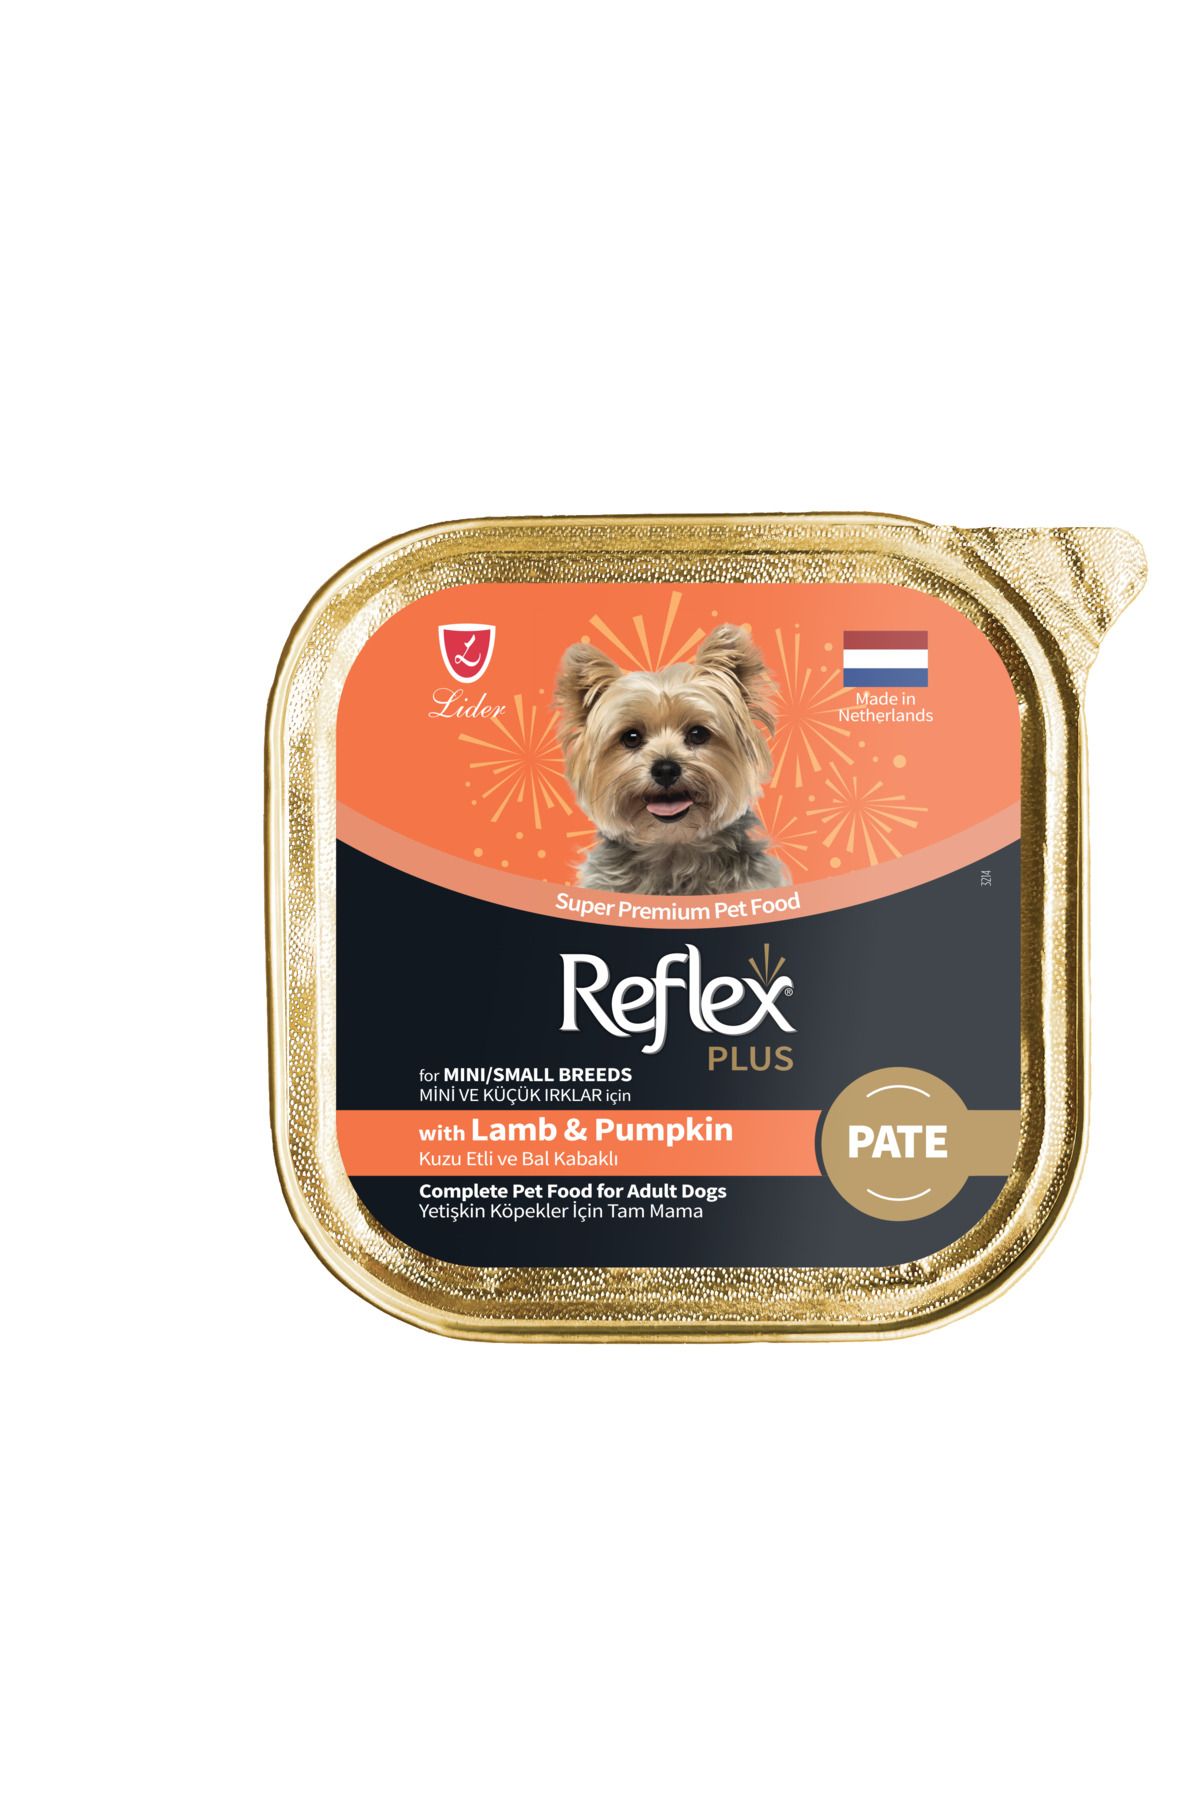 Reflex Plus Alu Tray 85 g Kuzu Etli ve Bal Kabaklı Pate Kıyılmış Mini ve Küçük Irk Köpekler için Yaş mama